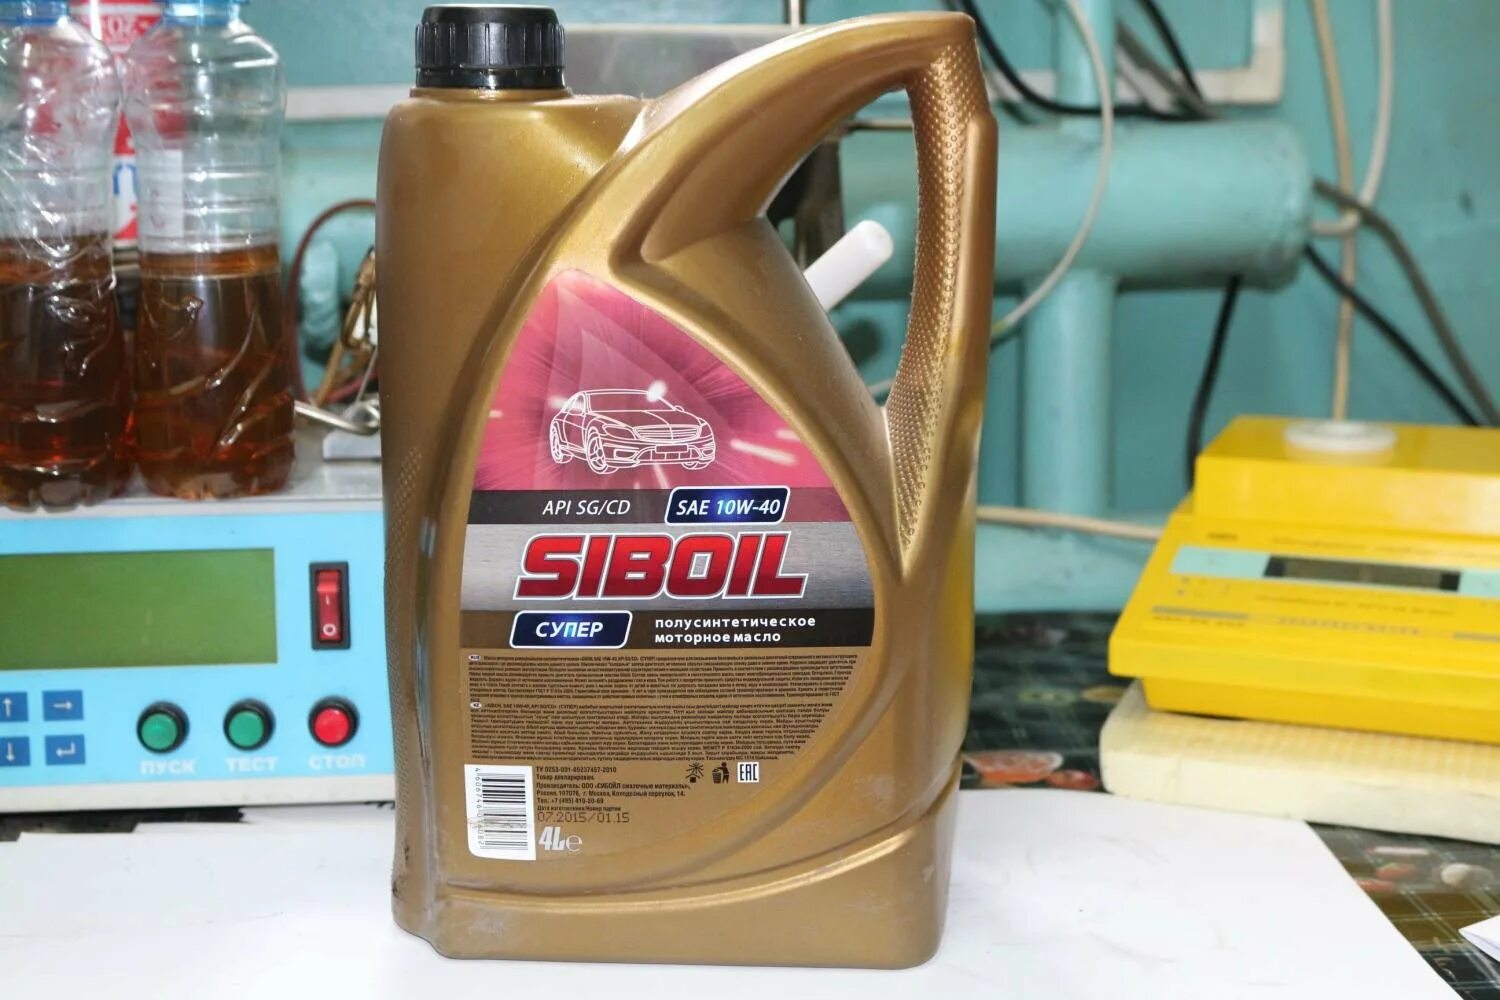 Апи моторного масла. Моторное масло Siboil супер SAE 10w 40. Масло моторное полусинтетическое Siboil супер 5w40 API SG/CD, 4л. Моторное масло Siboil 5w 40 полусинтетика. Siboil 5w40 платинум.